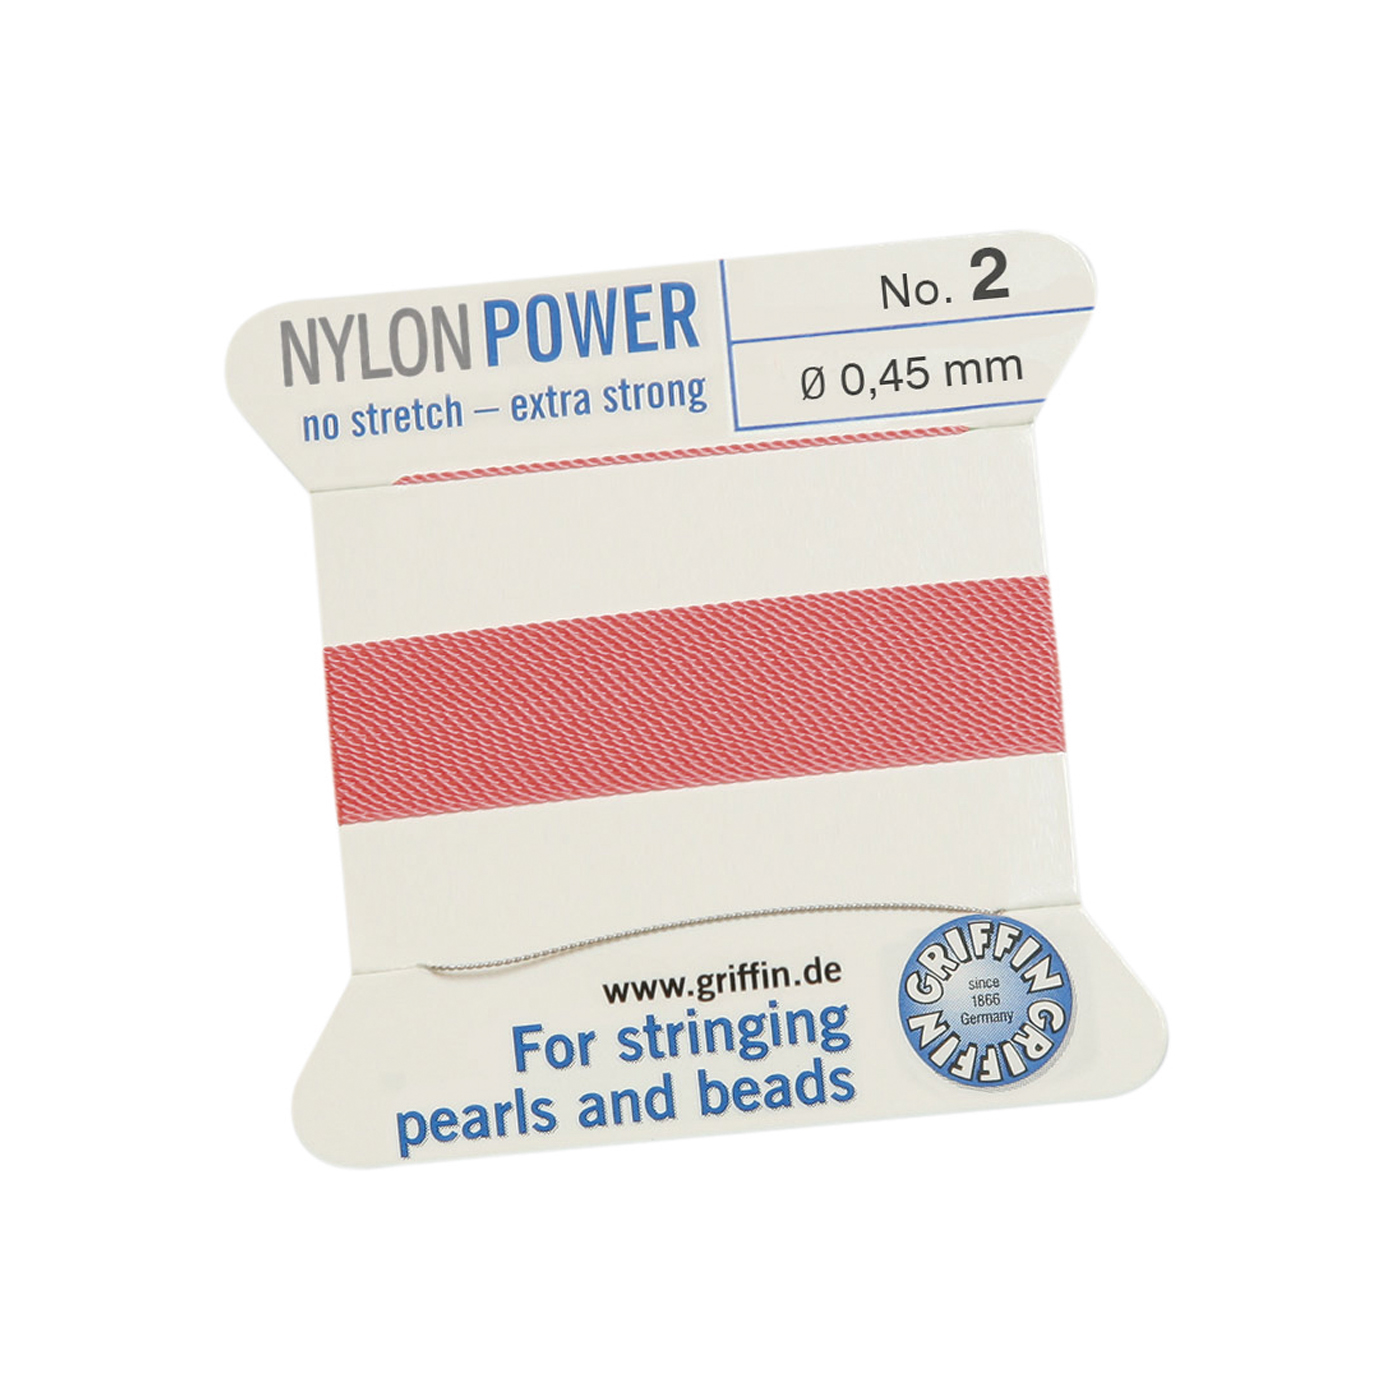 Bead Cord NylonPower, Dark Pink, No. 2 - 2 m